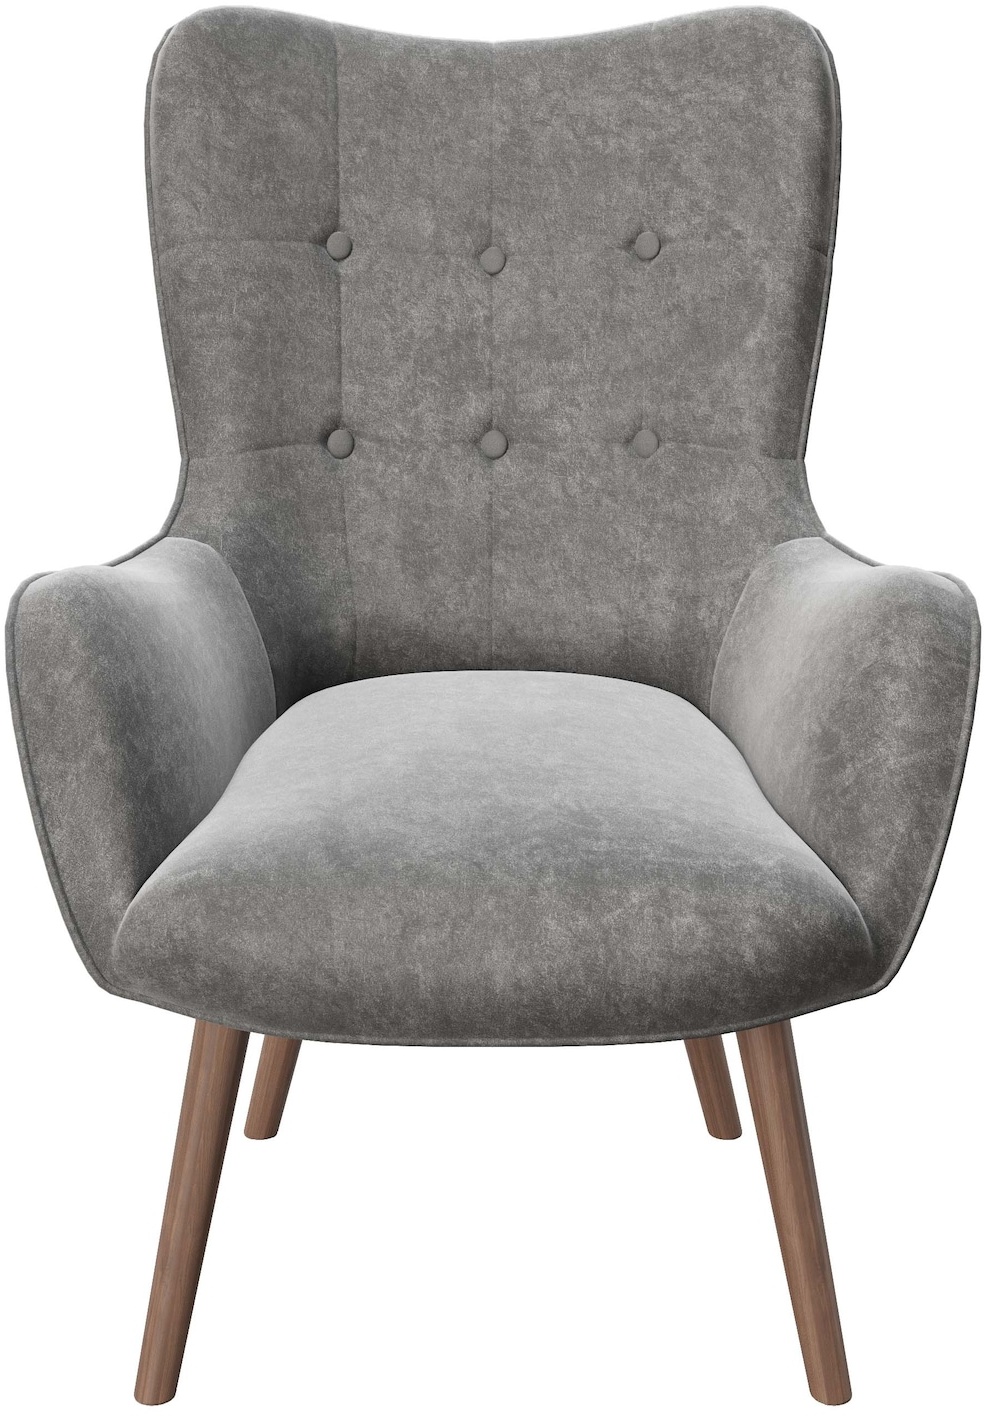 PLAYBOY - Sessel "BRIDGET" gepolsterter Lehnensessel, Samtstoff in Grau mit Massivholzfüssen, Retro-Design